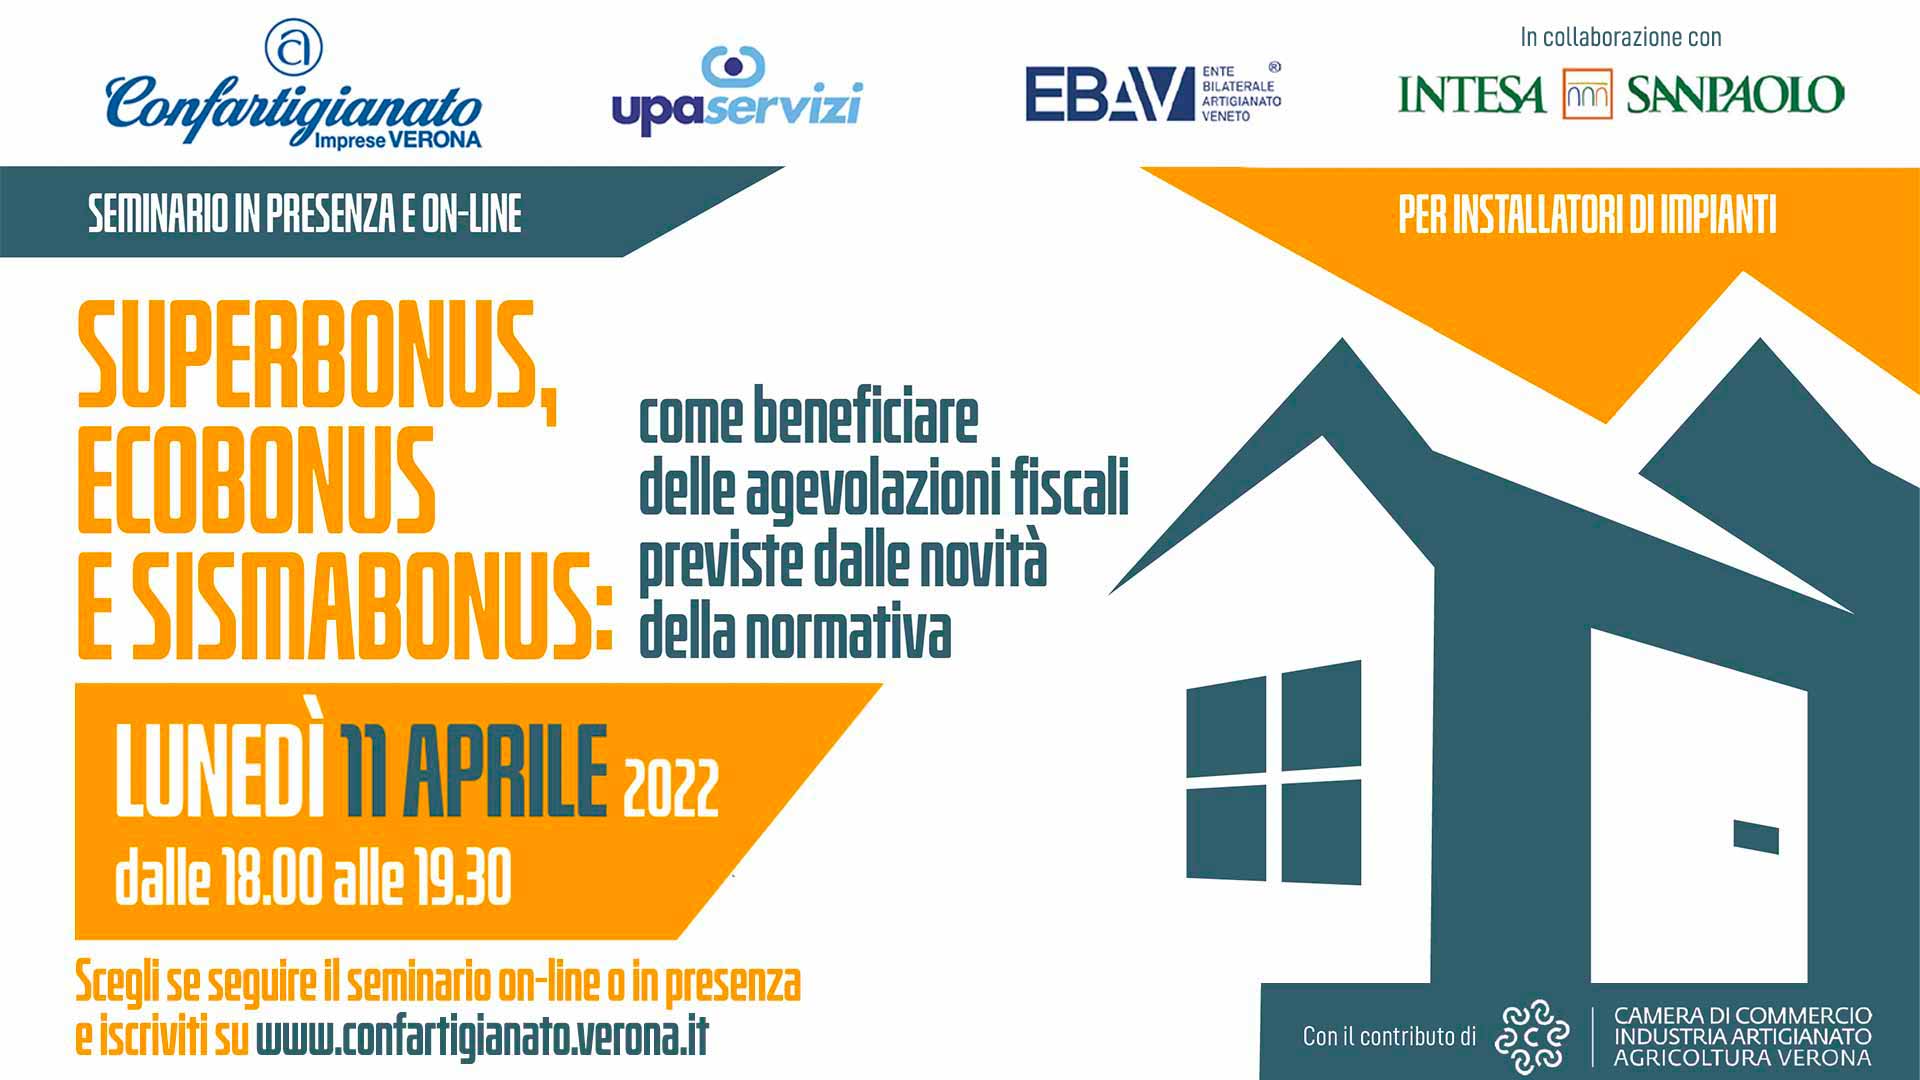 IMPIANTI – Superbonus, Ecobonus e Sismabonus: come beneficiare delle agevolazioni. L'11 aprile, seminario online o in presenza. Iscriviti